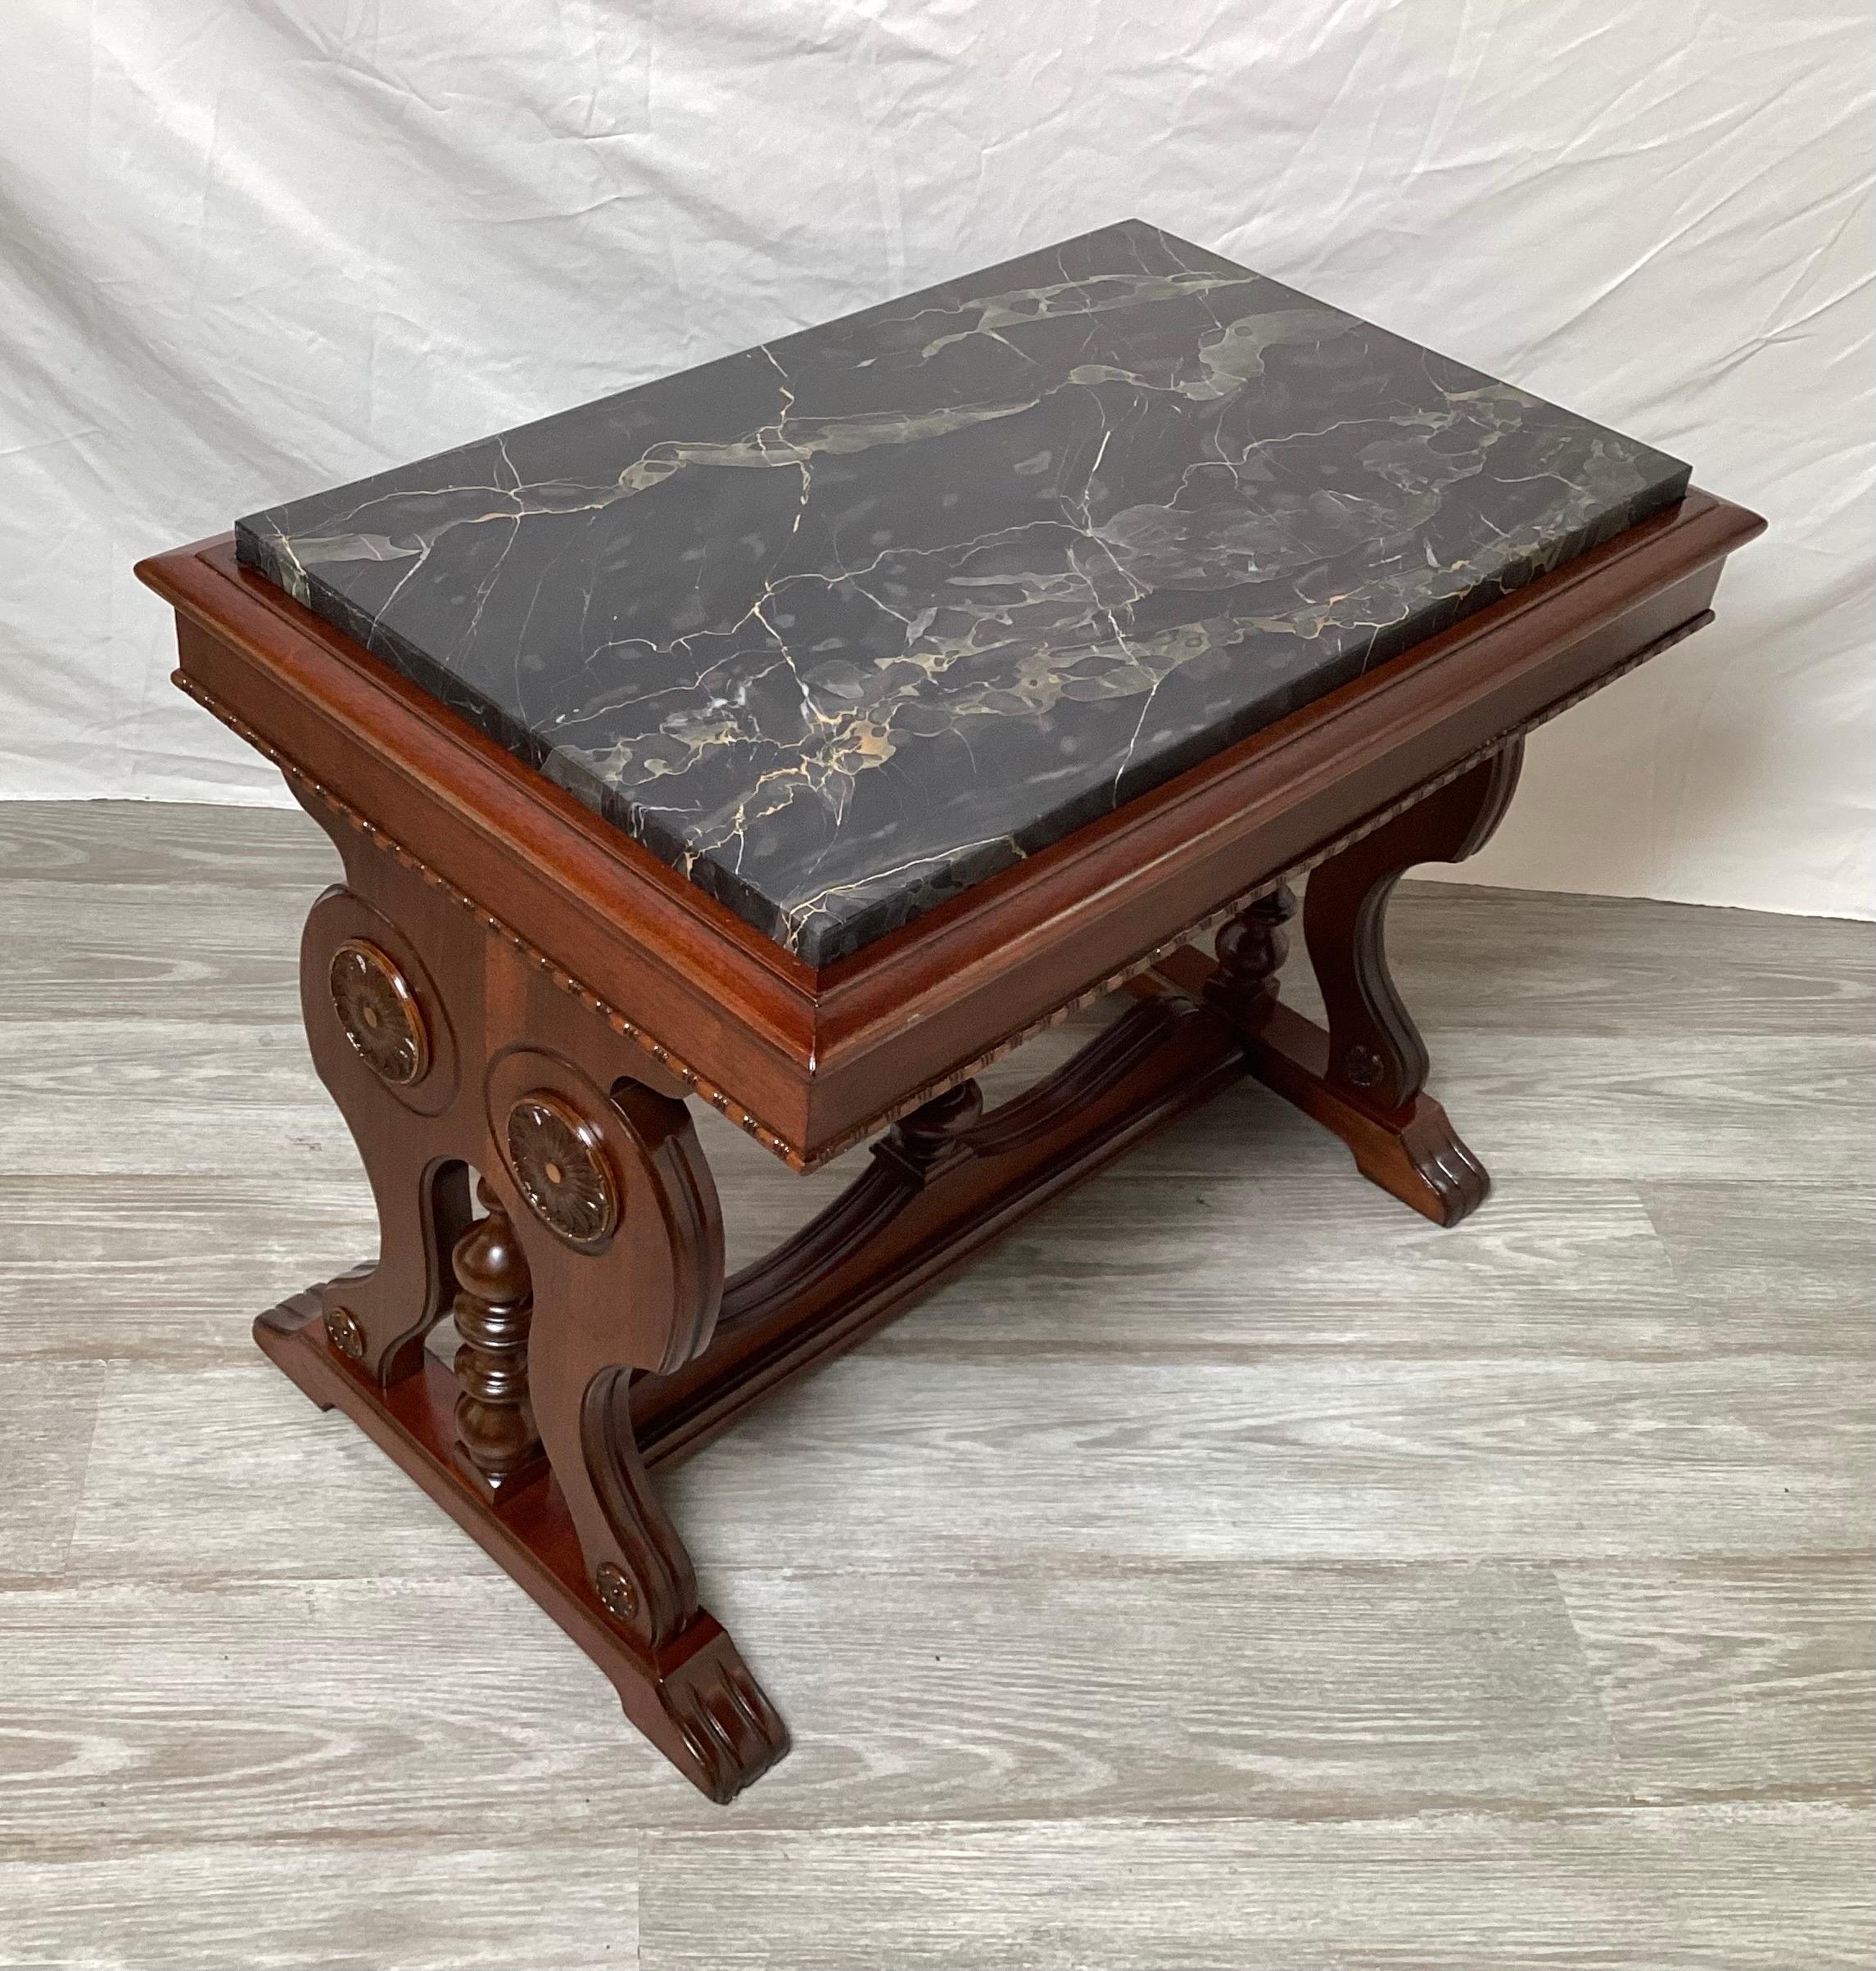 Wunderschön geschnitzter Nussbaumtisch mit schwarzer Marmorplatte. Die schildförmigen Seiten mit geschnitzten Medaillons und eingelassener Marmorplatte.